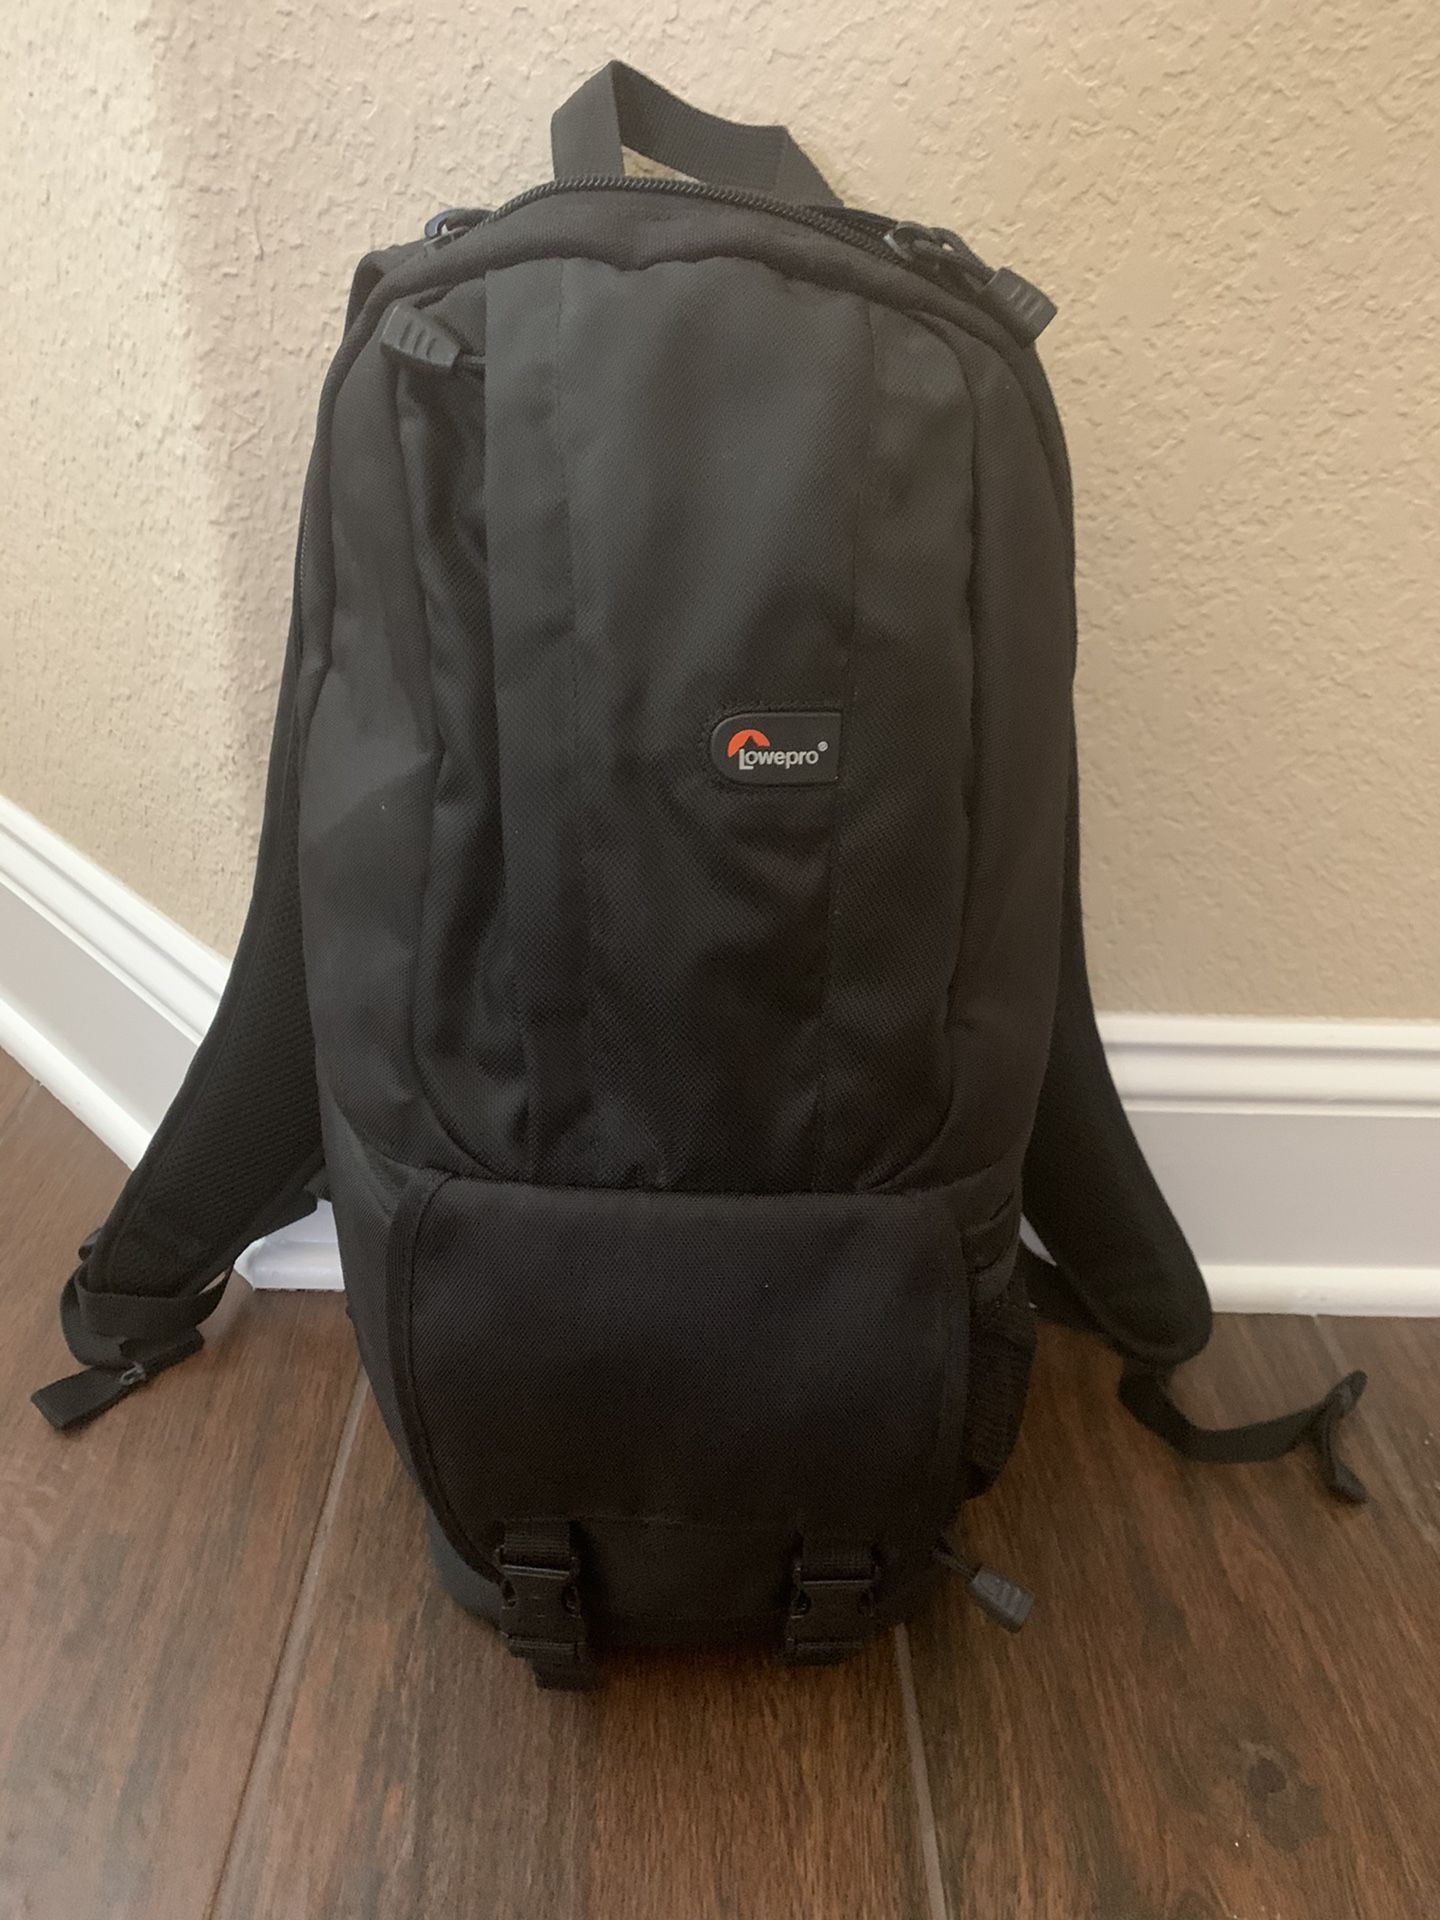 Lowepro Fastpack 100 camera backpack - bag